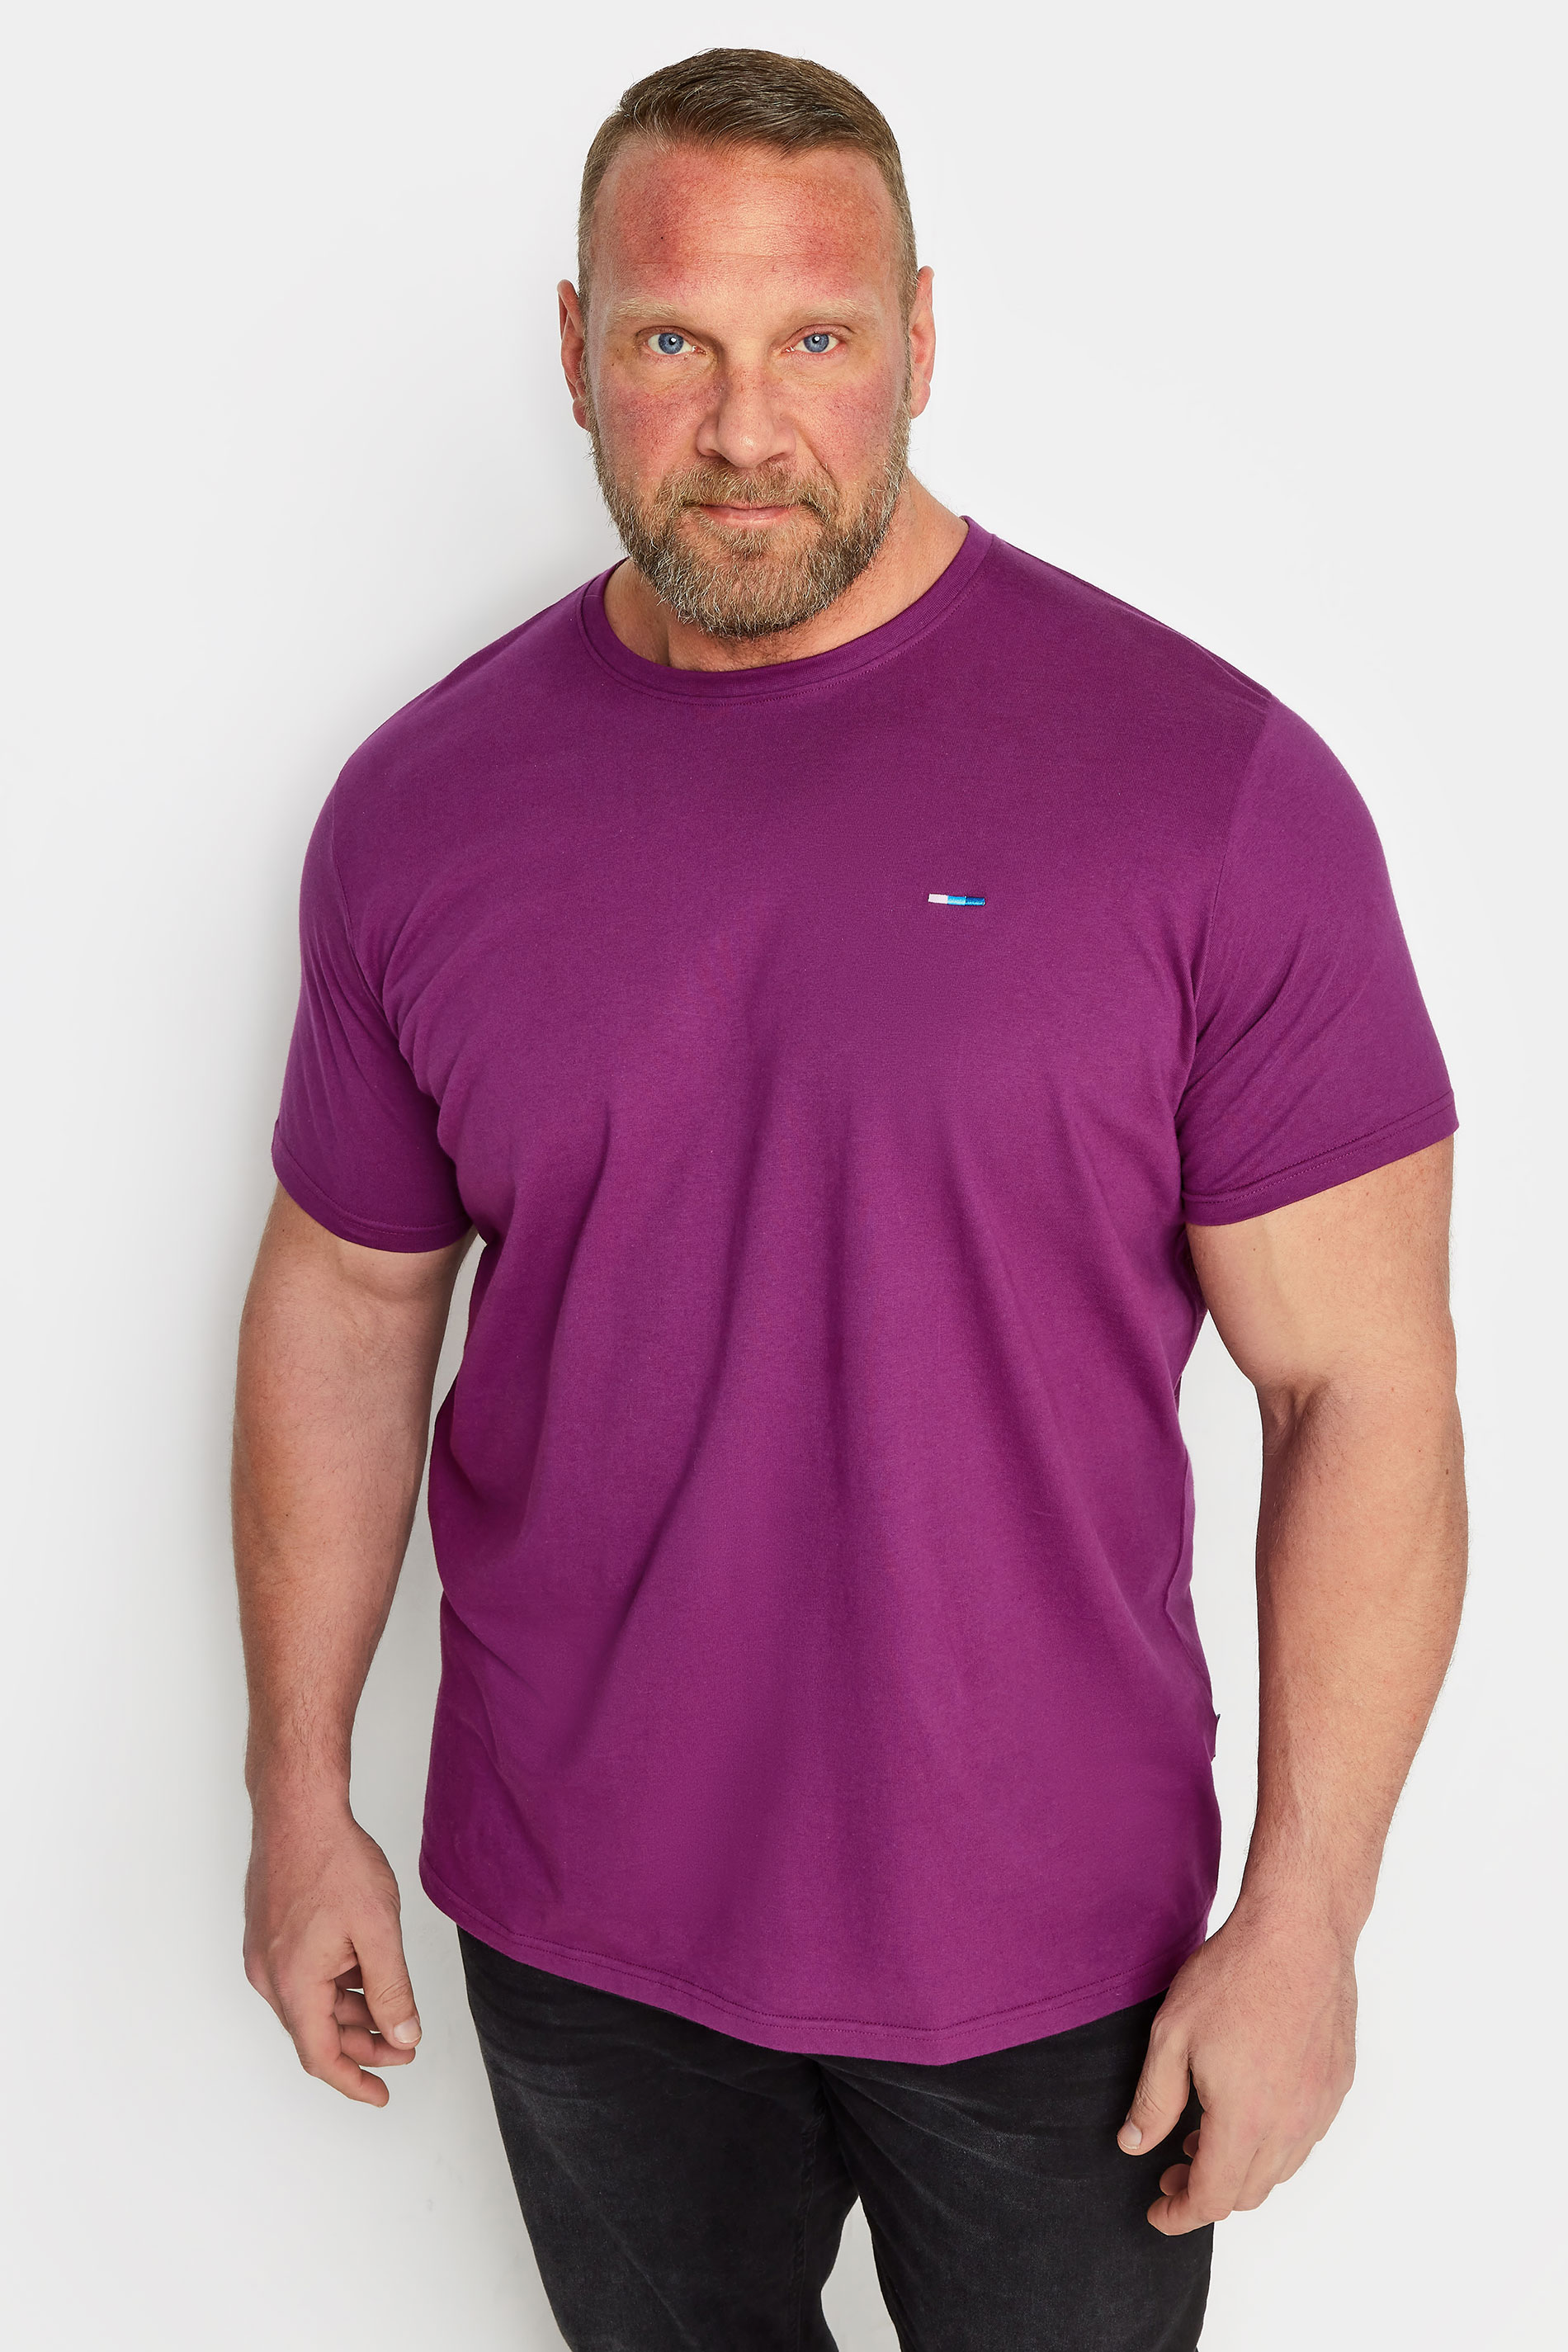 BadRhino Big & Tall Plum Purple Core T-Shirt | BadRhino 1